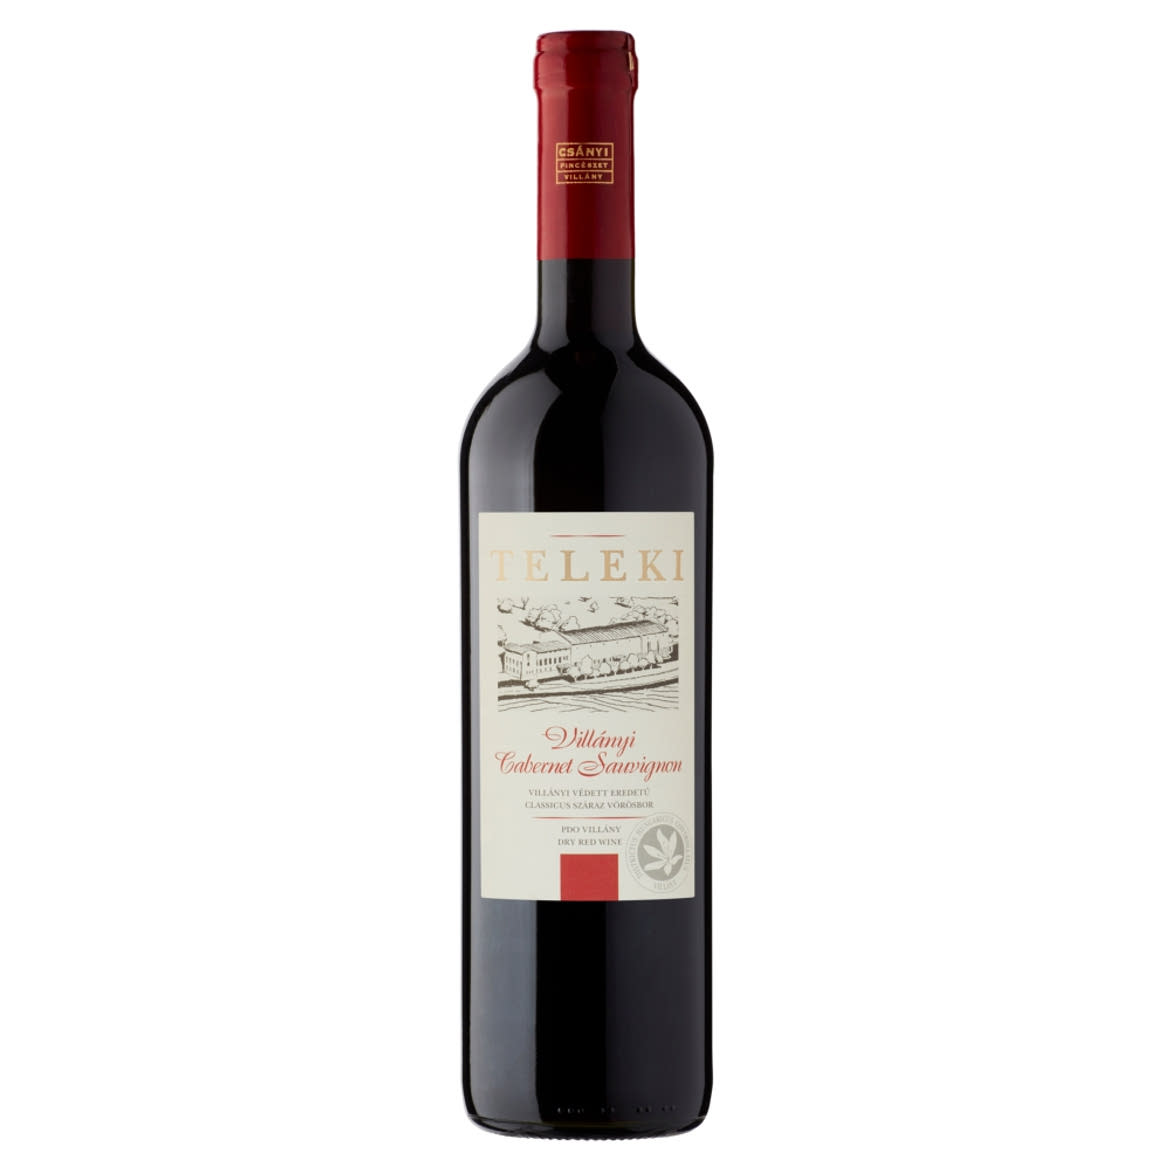 Csányi Pincészet Teleki Villányi Cabernet Sauvignon classicus száraz vörösbor 14%